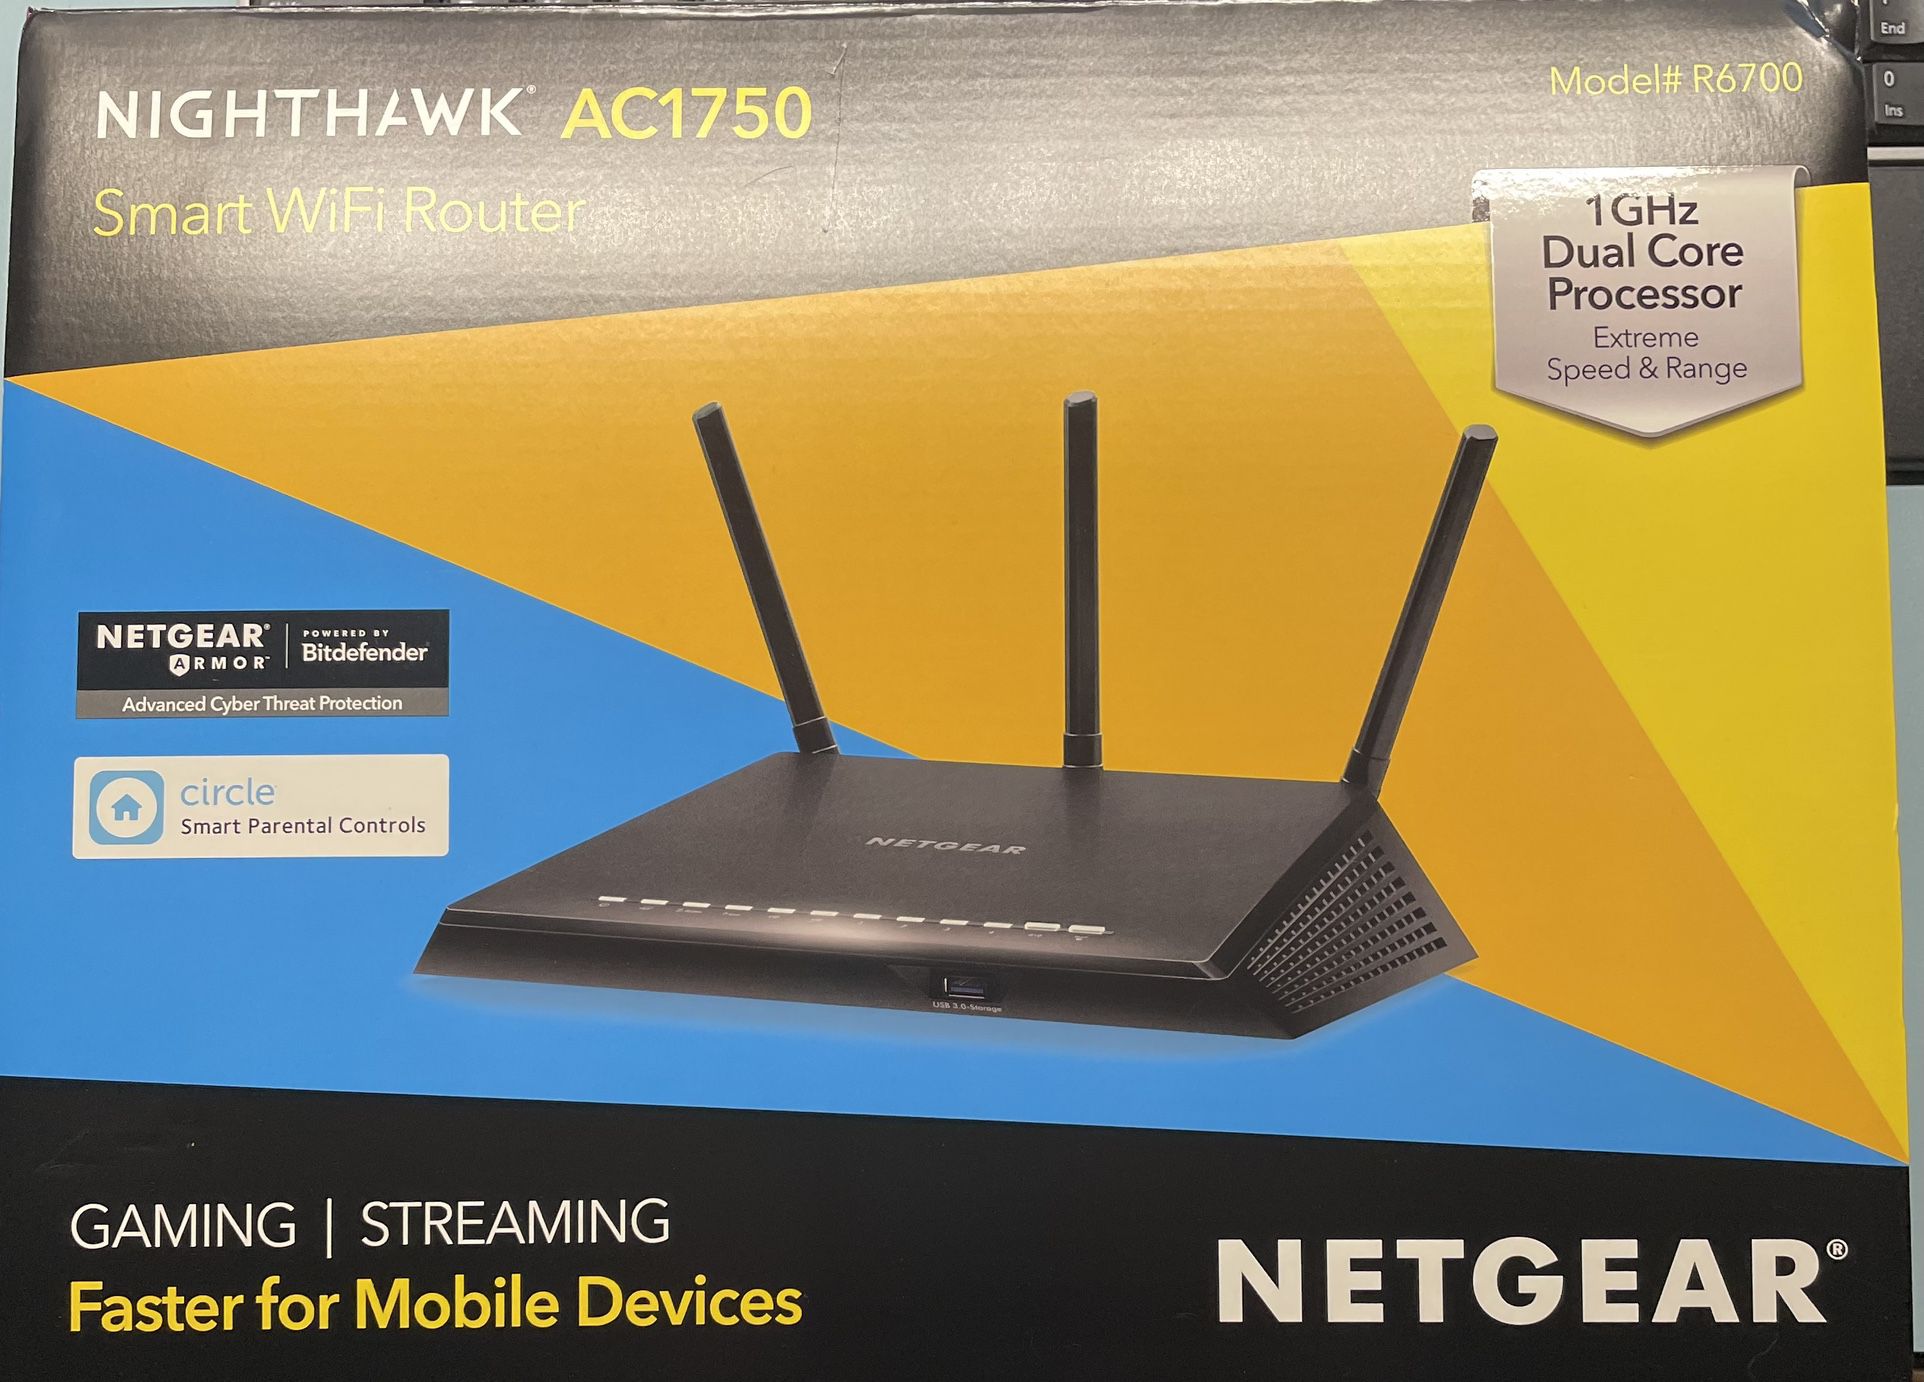 WiFi Router By Netgear- Nighthawk Ac1750